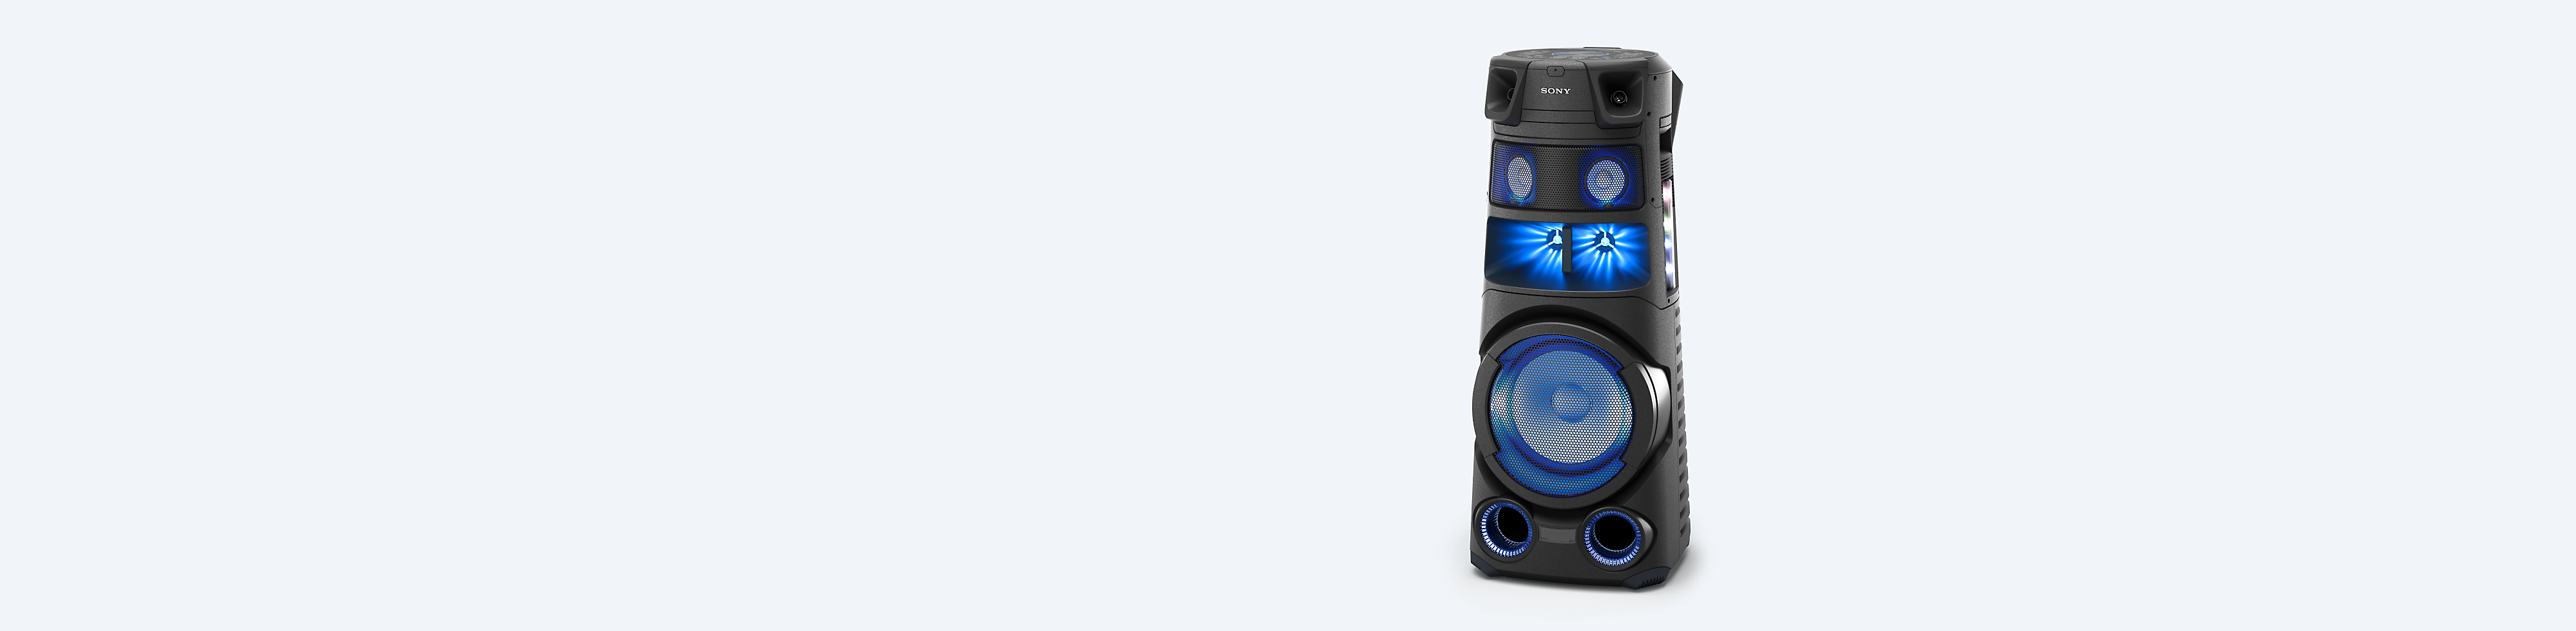 Sistema de áudio de alta potência Sony num fundo azul